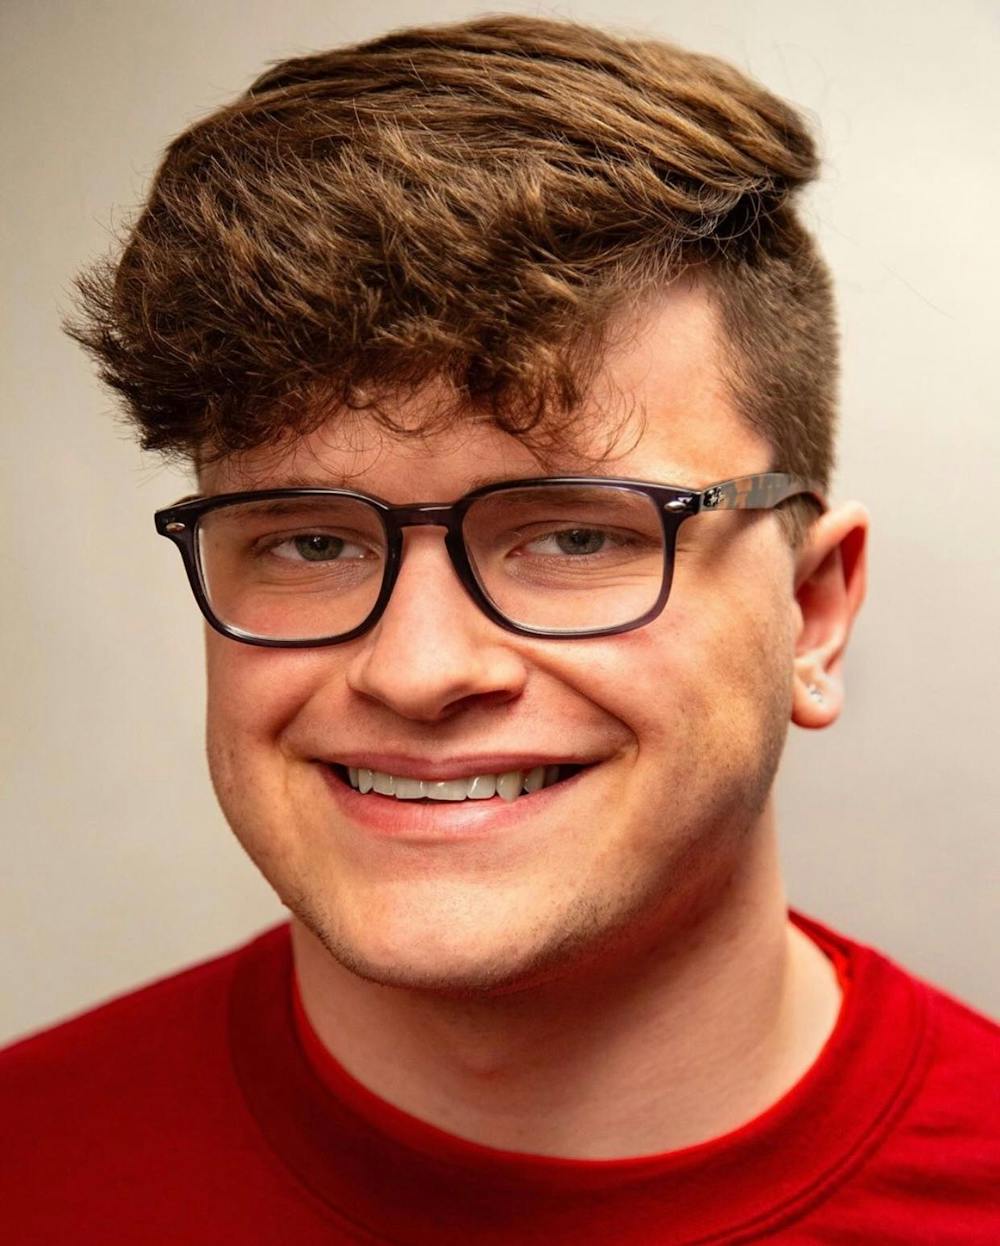 二年级的创意总监特里斯坦·杰克逊(Tristan Jackson)将担任《印第安纳学生日报》(Indiana Daily Student')的夏季主编。